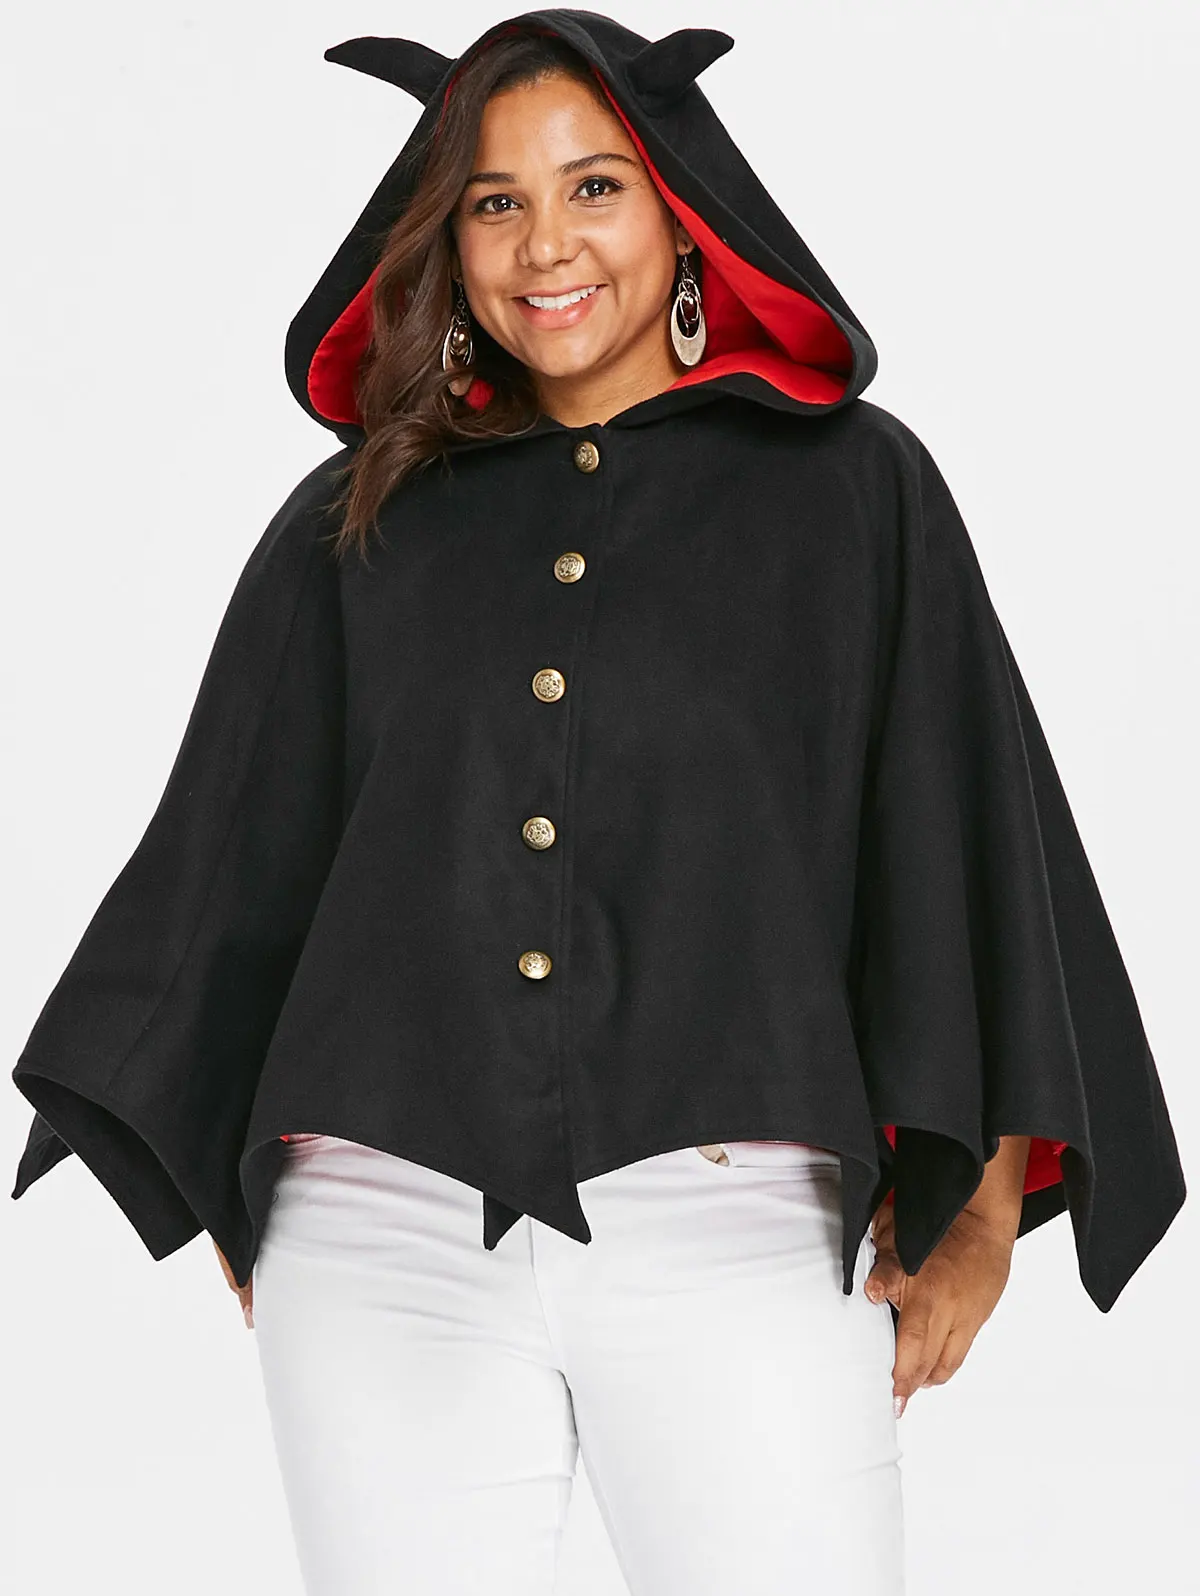 Фото Wipalo/женская верхняя одежда на Хеллоуин больших размеров пальто пуговицах с